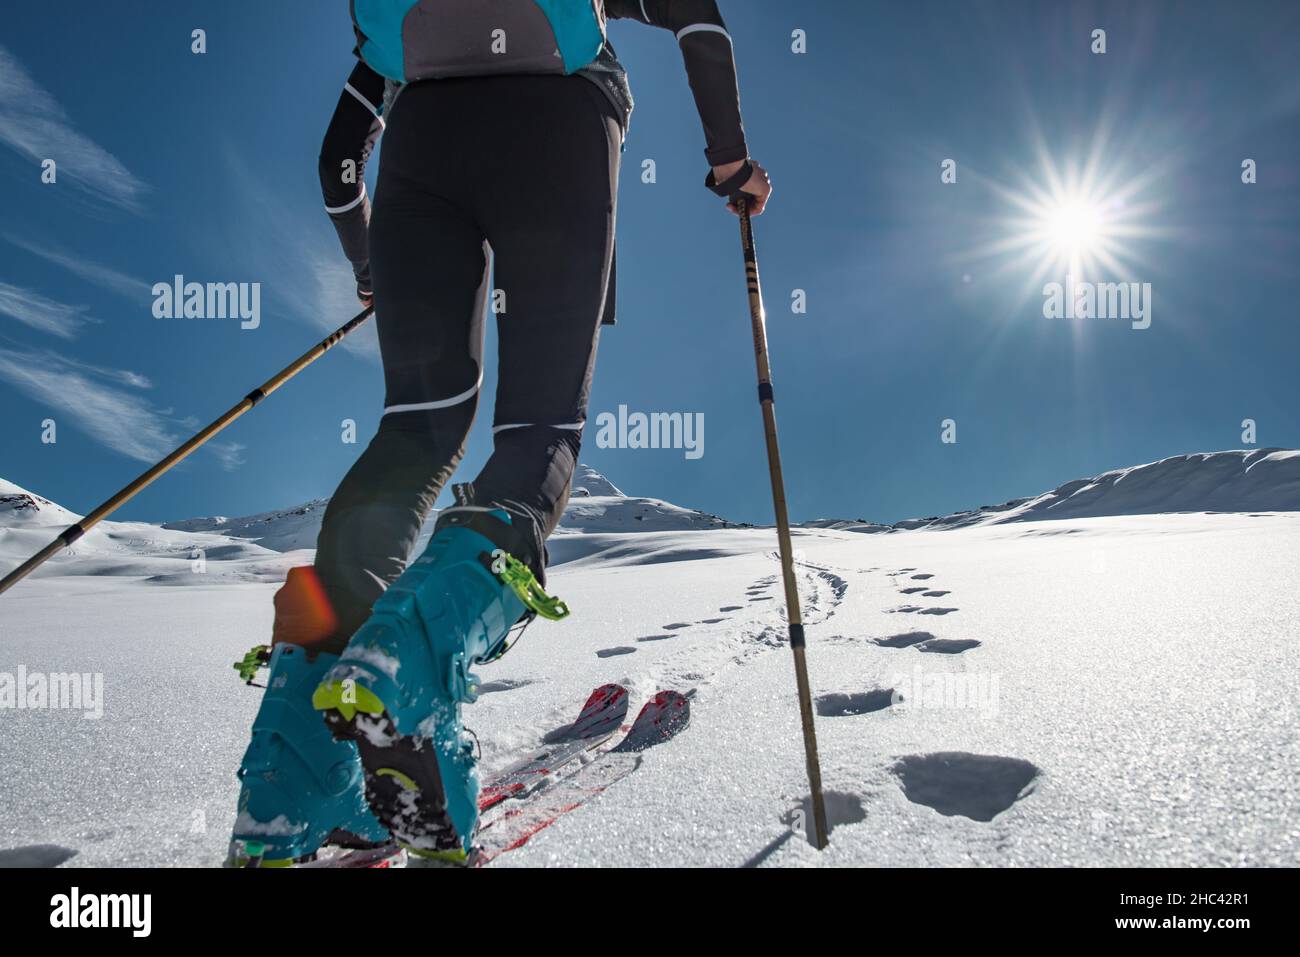 Le ski alpiniste monte sur une pente enneigée avec des peaux de phoques Banque D'Images